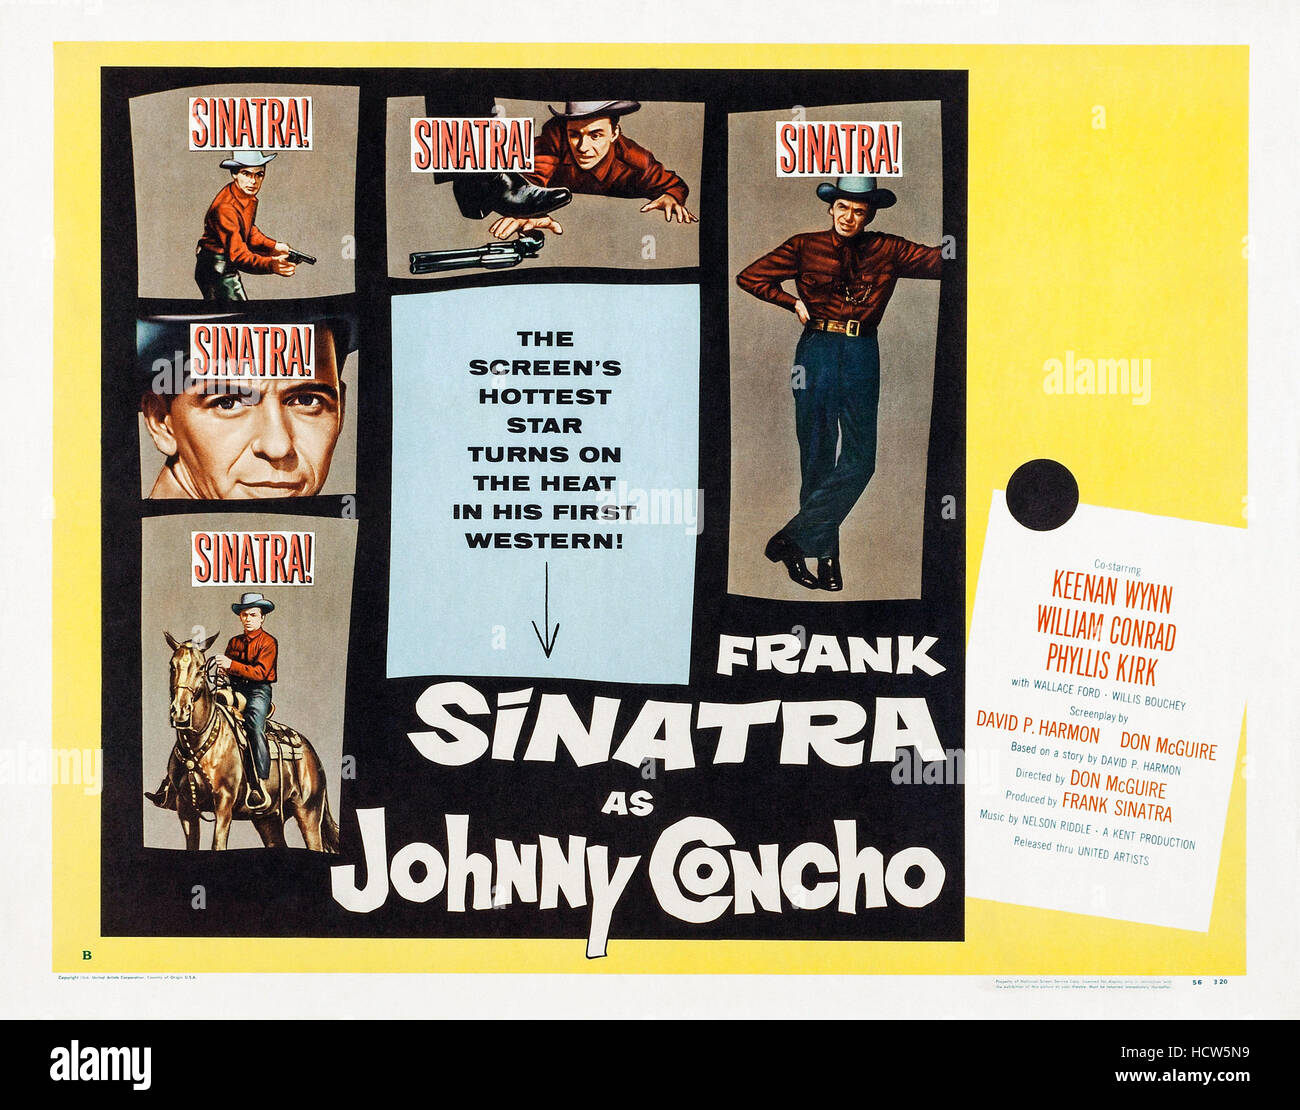 JOHNNY CONCHO, US poster art, Frank Sinatra, 1956 Stock Photo